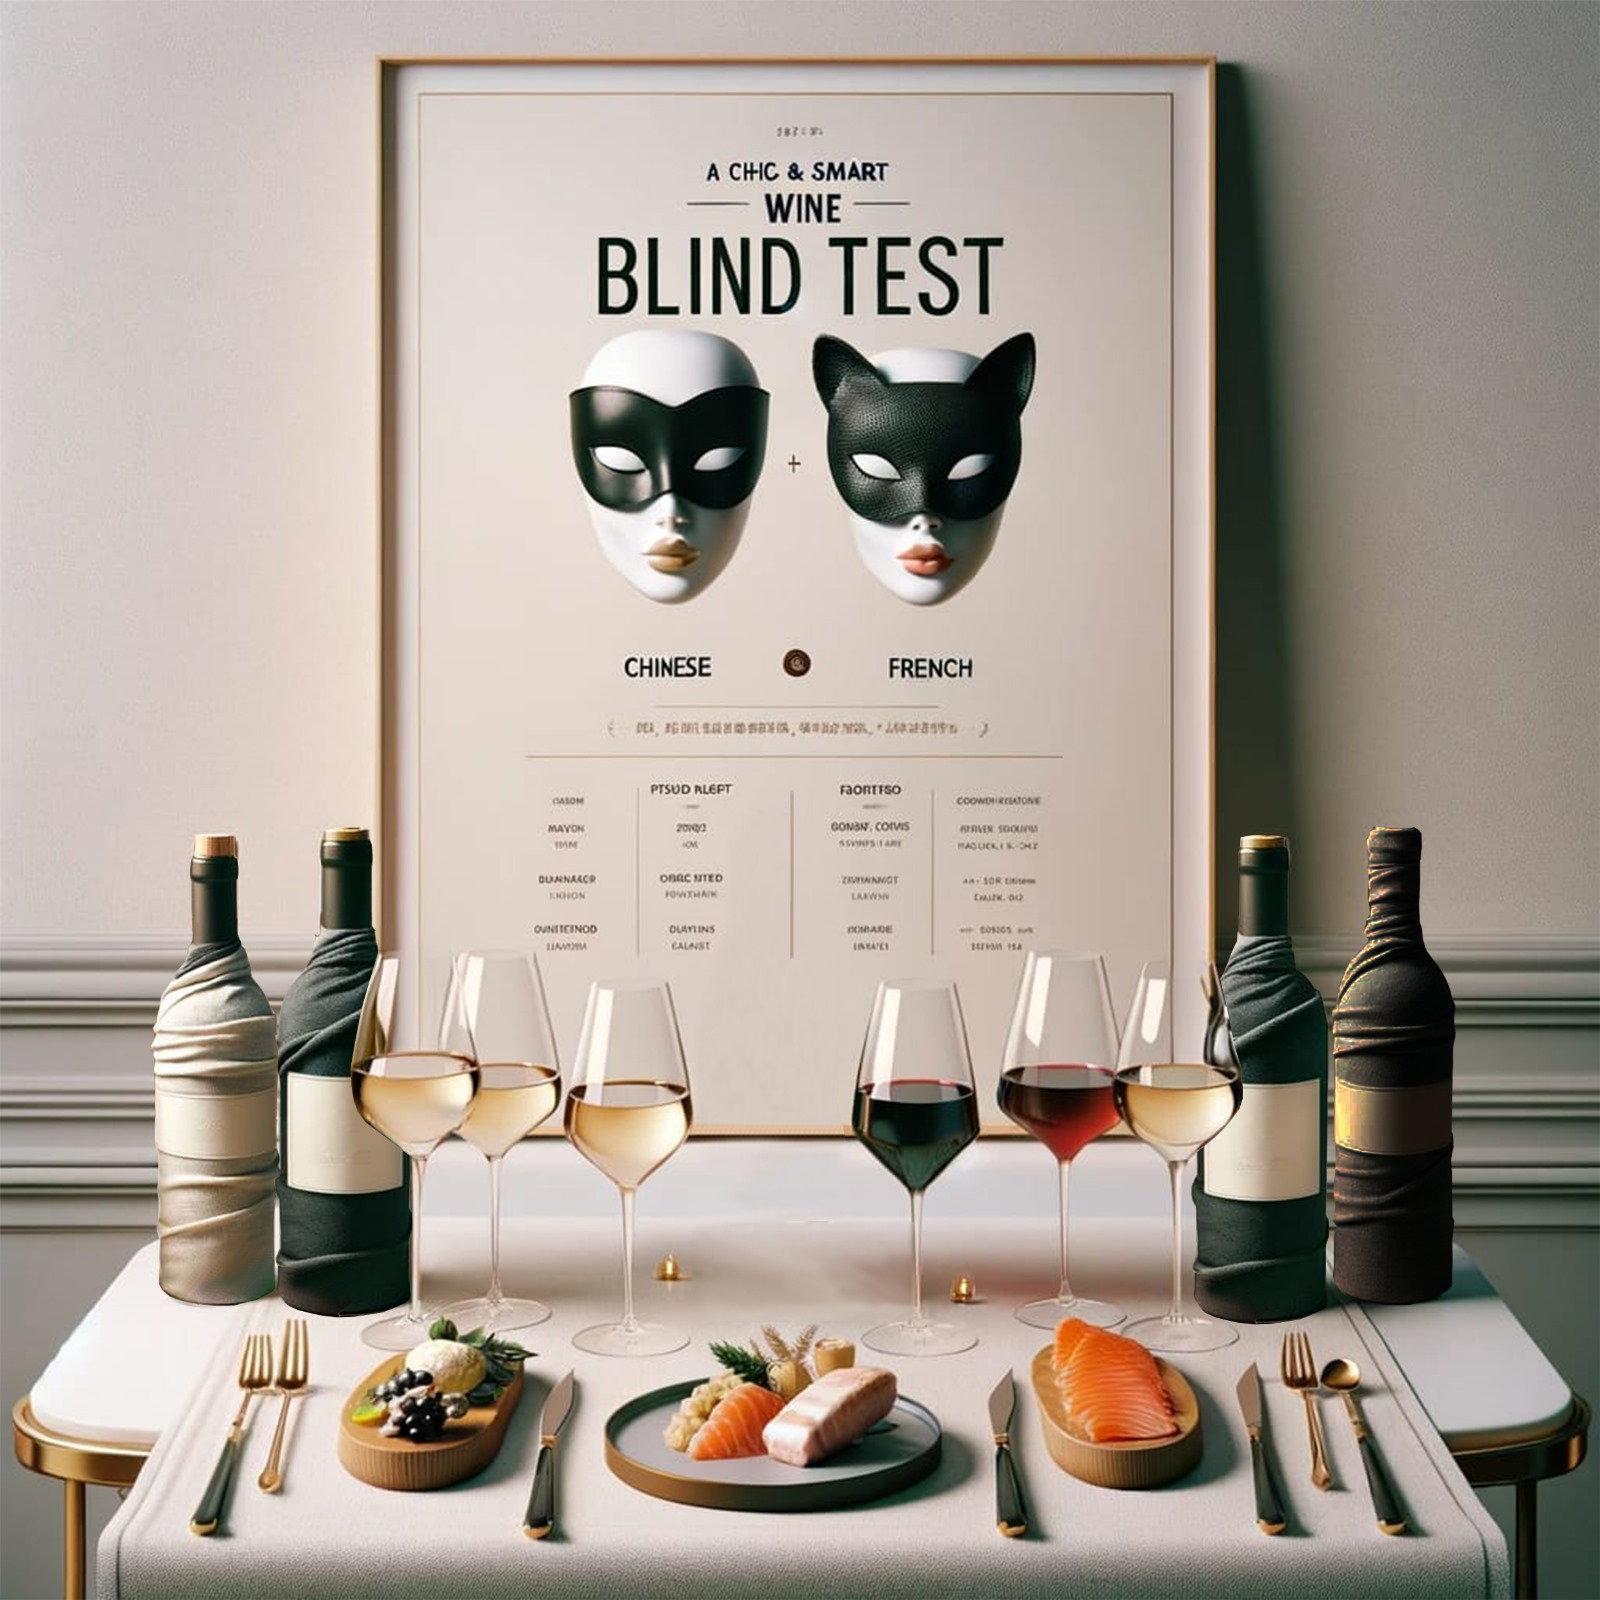 Lire la suite à propos de l’article Wine Blind Test : Vins chinois vs vins français